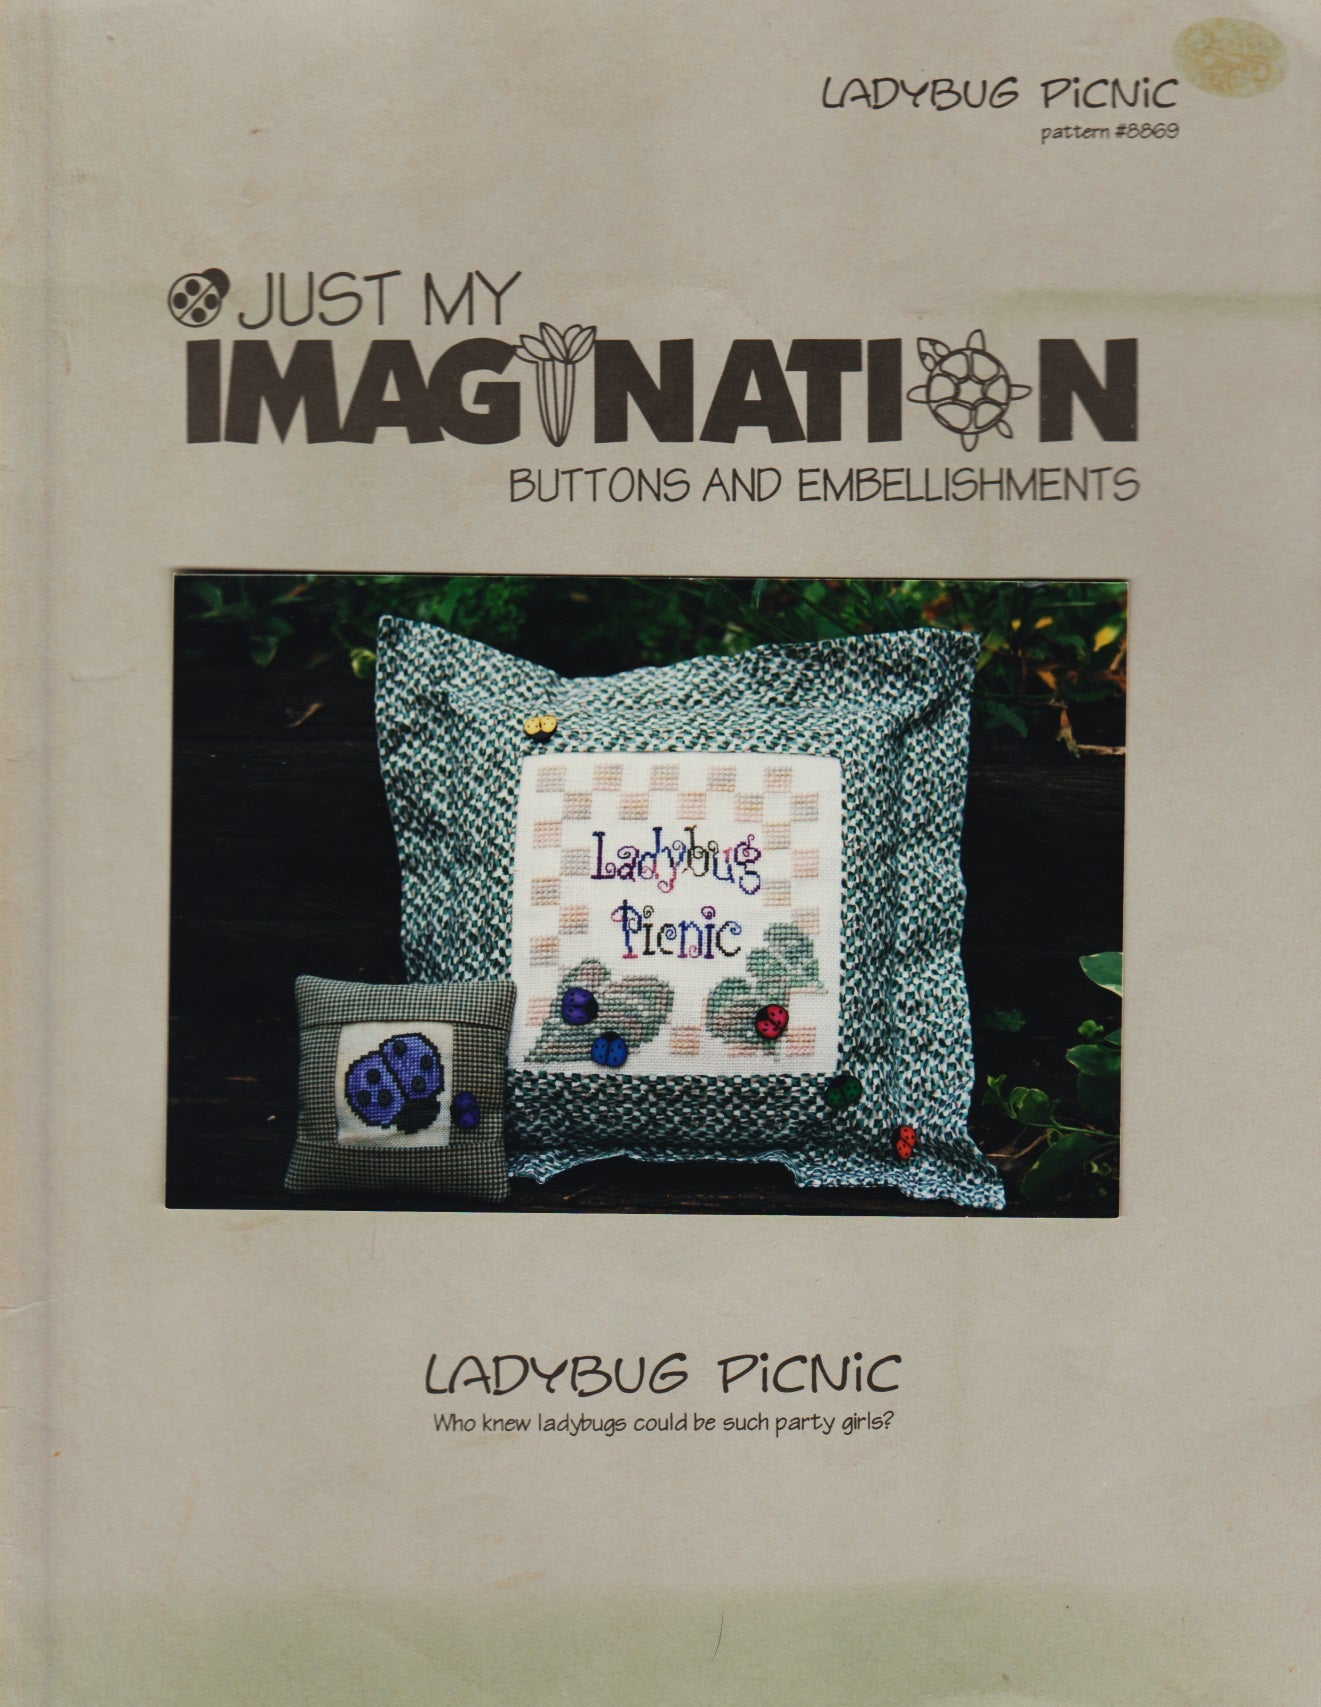 Just My Imagination Ladybug Picnic 8869 cross stitch pattern